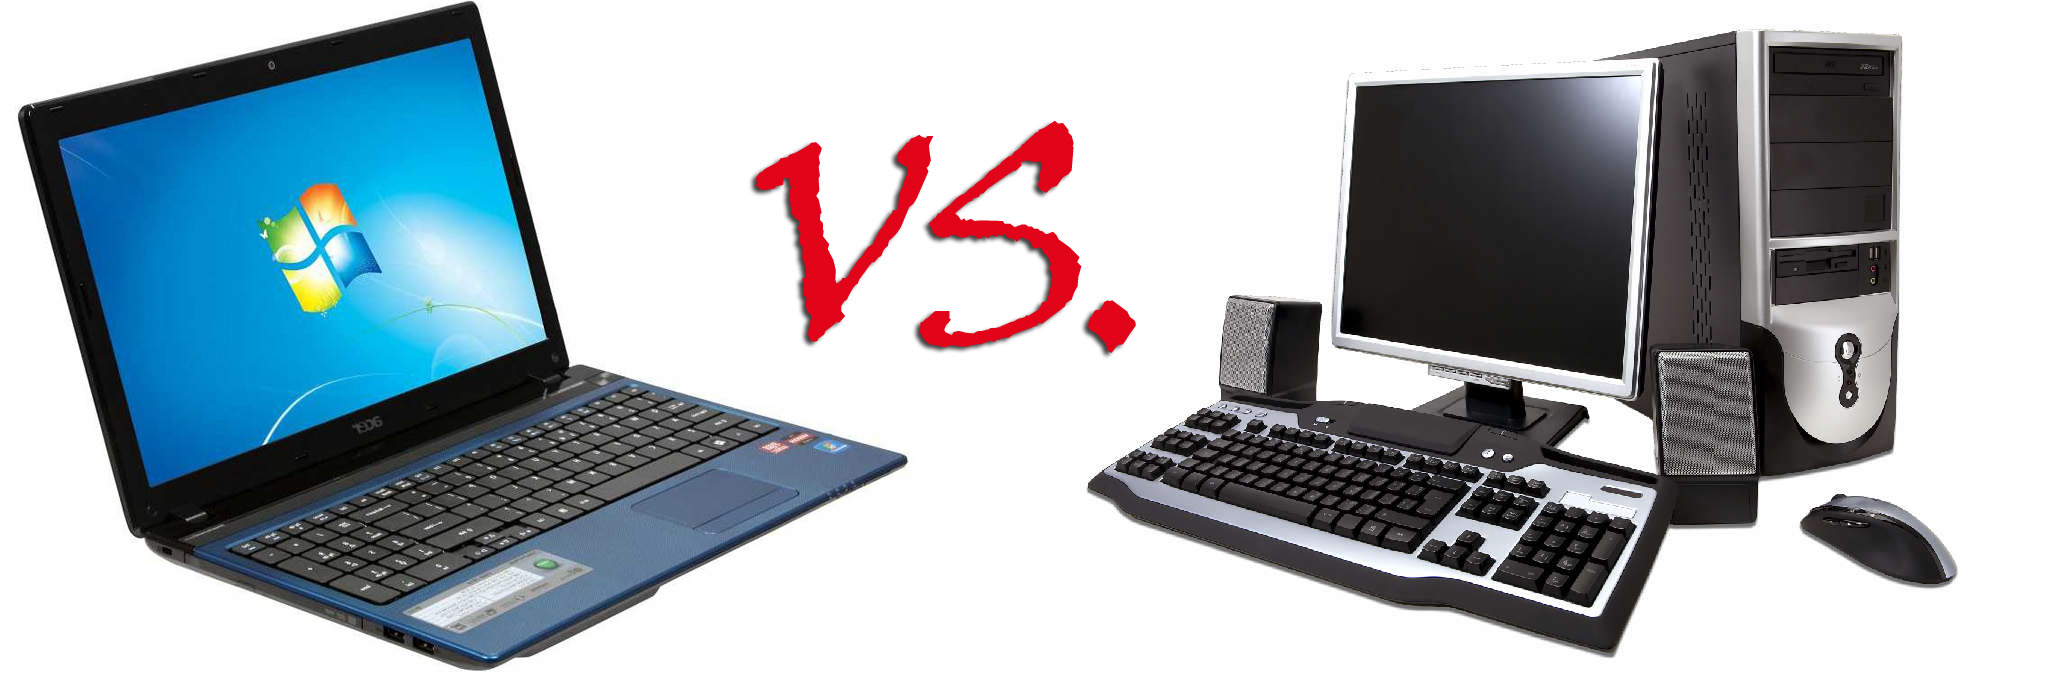 desktop-versus-laptop